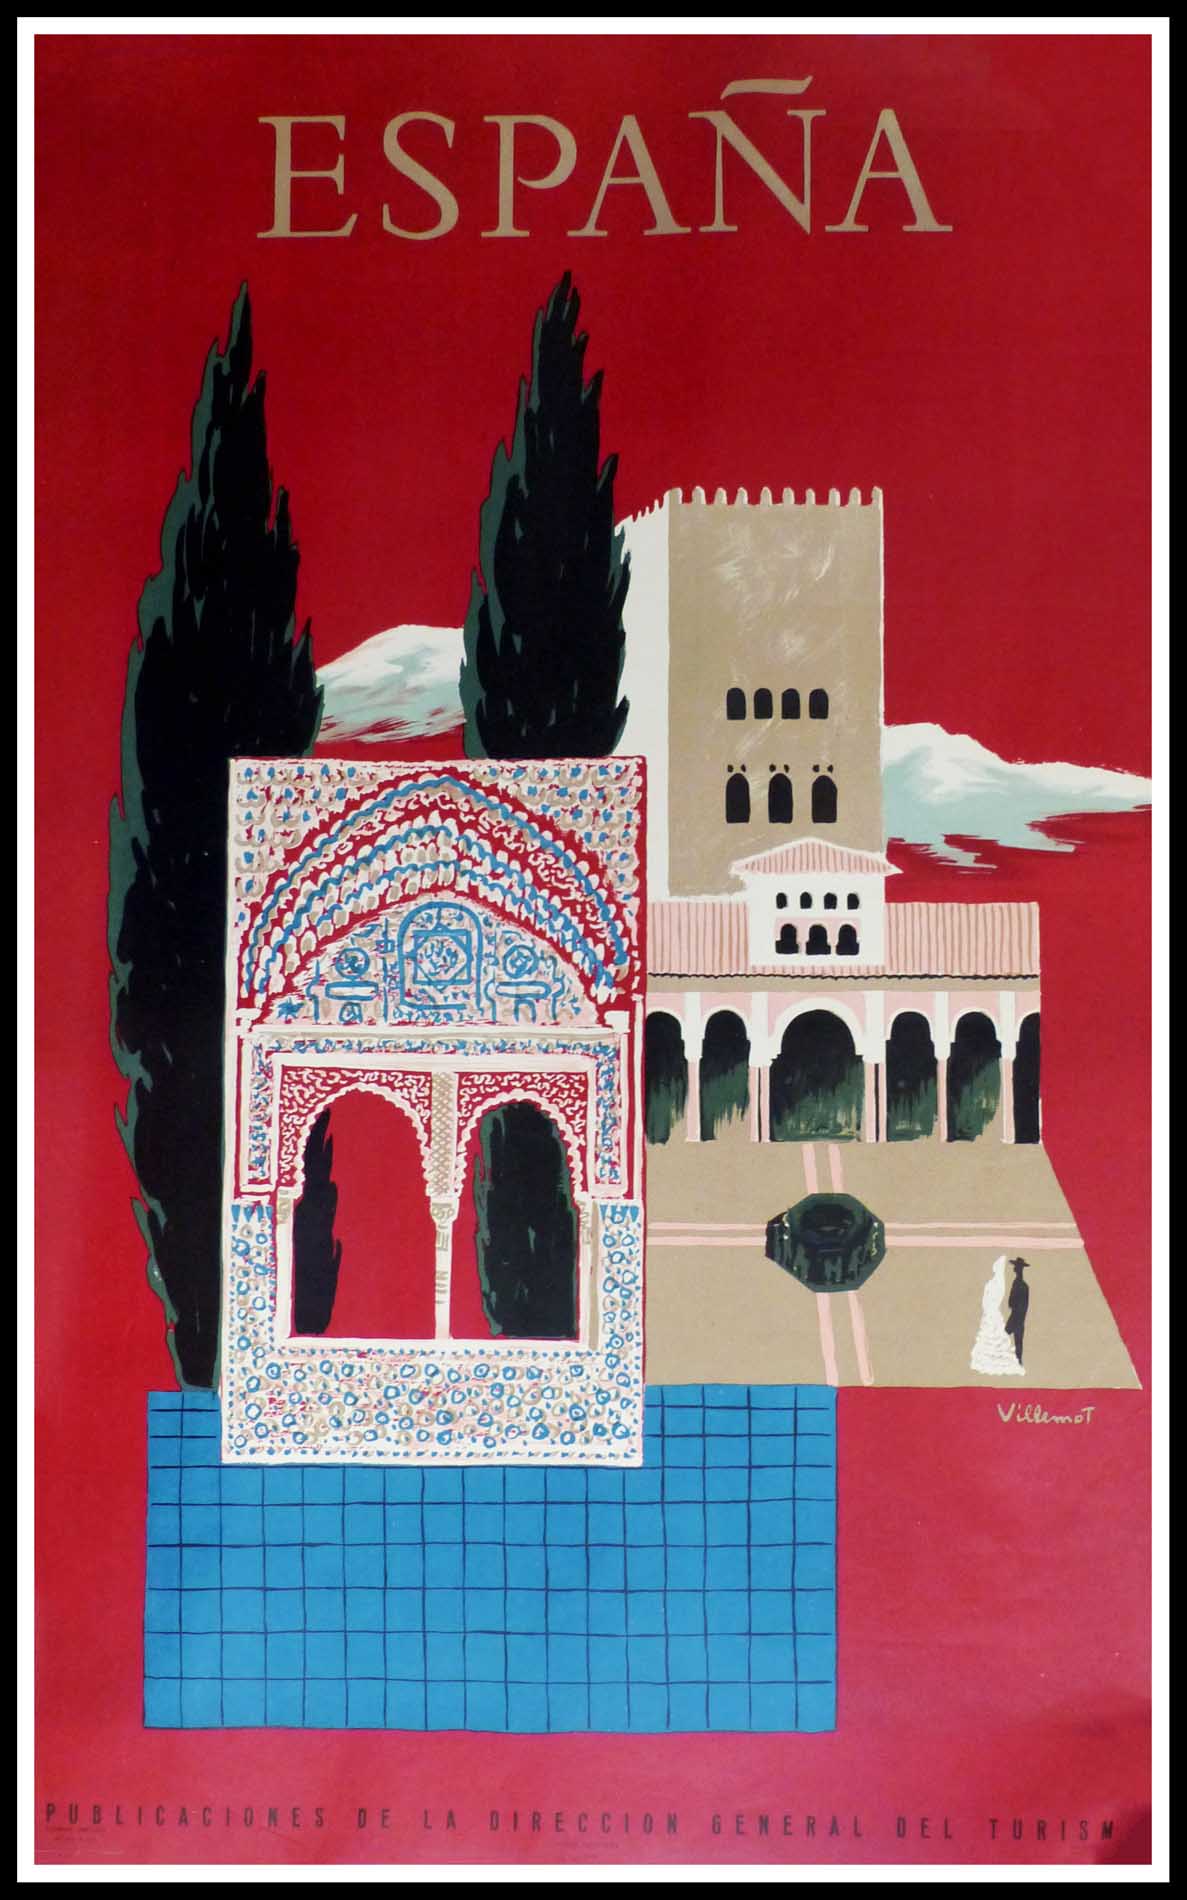 (alt="original vintage travel poster, SPAIN Grenade Alhambra, signed in the plate VILLEMOT, 1957 printed by Rieusset Barcelone")